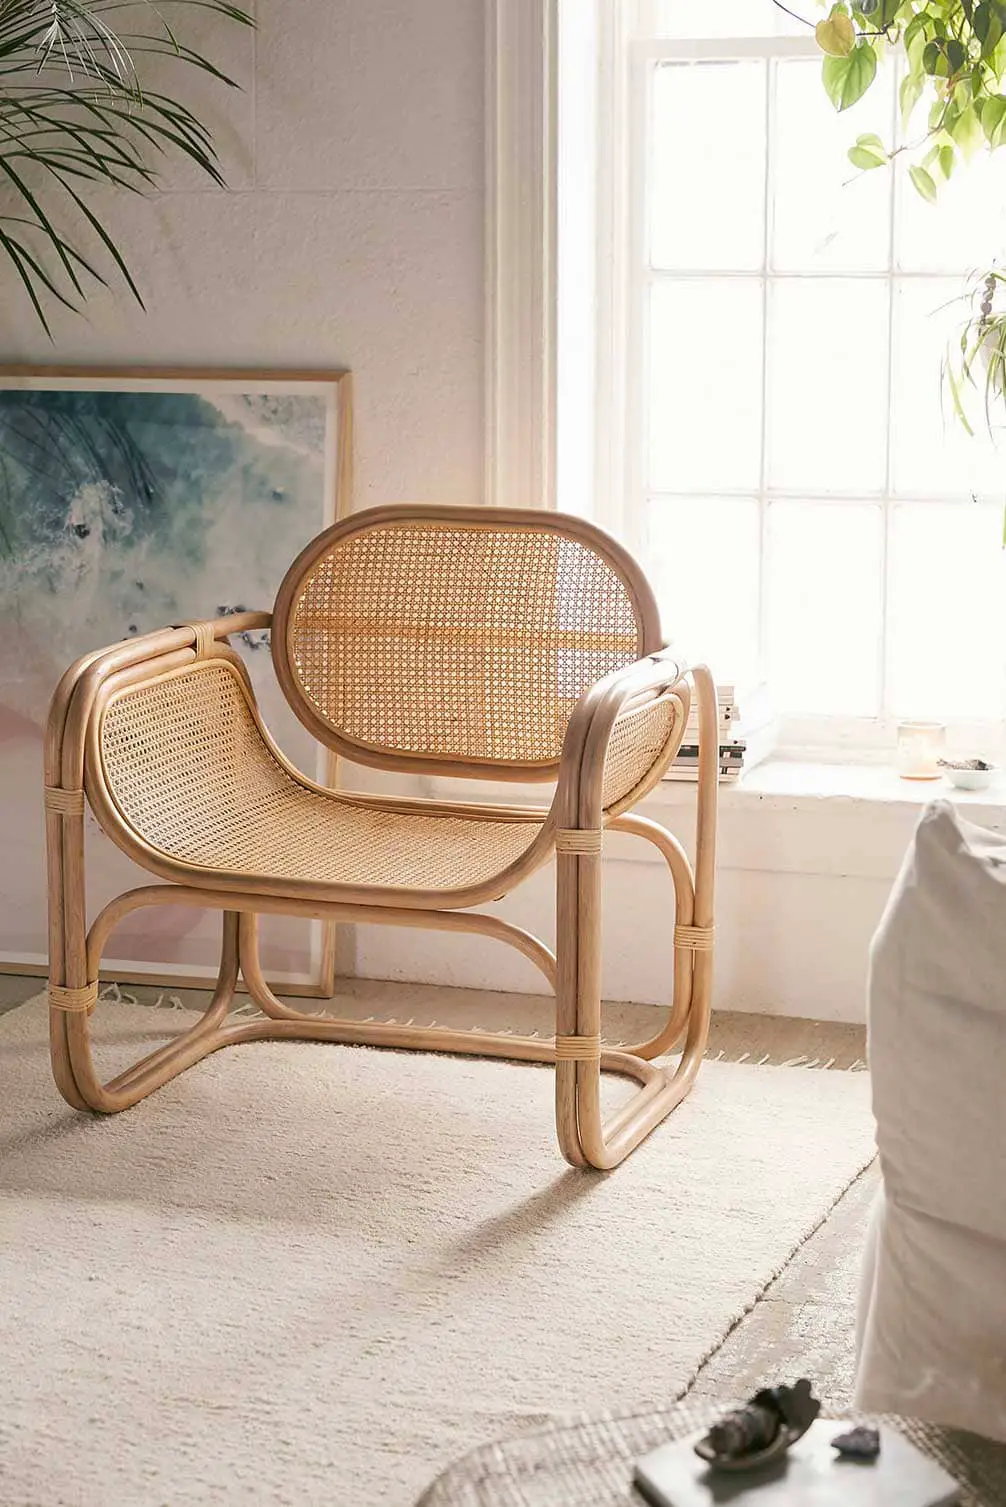 Idée de fauteuil arrondi en cannage et bambou - Decorazine.fr